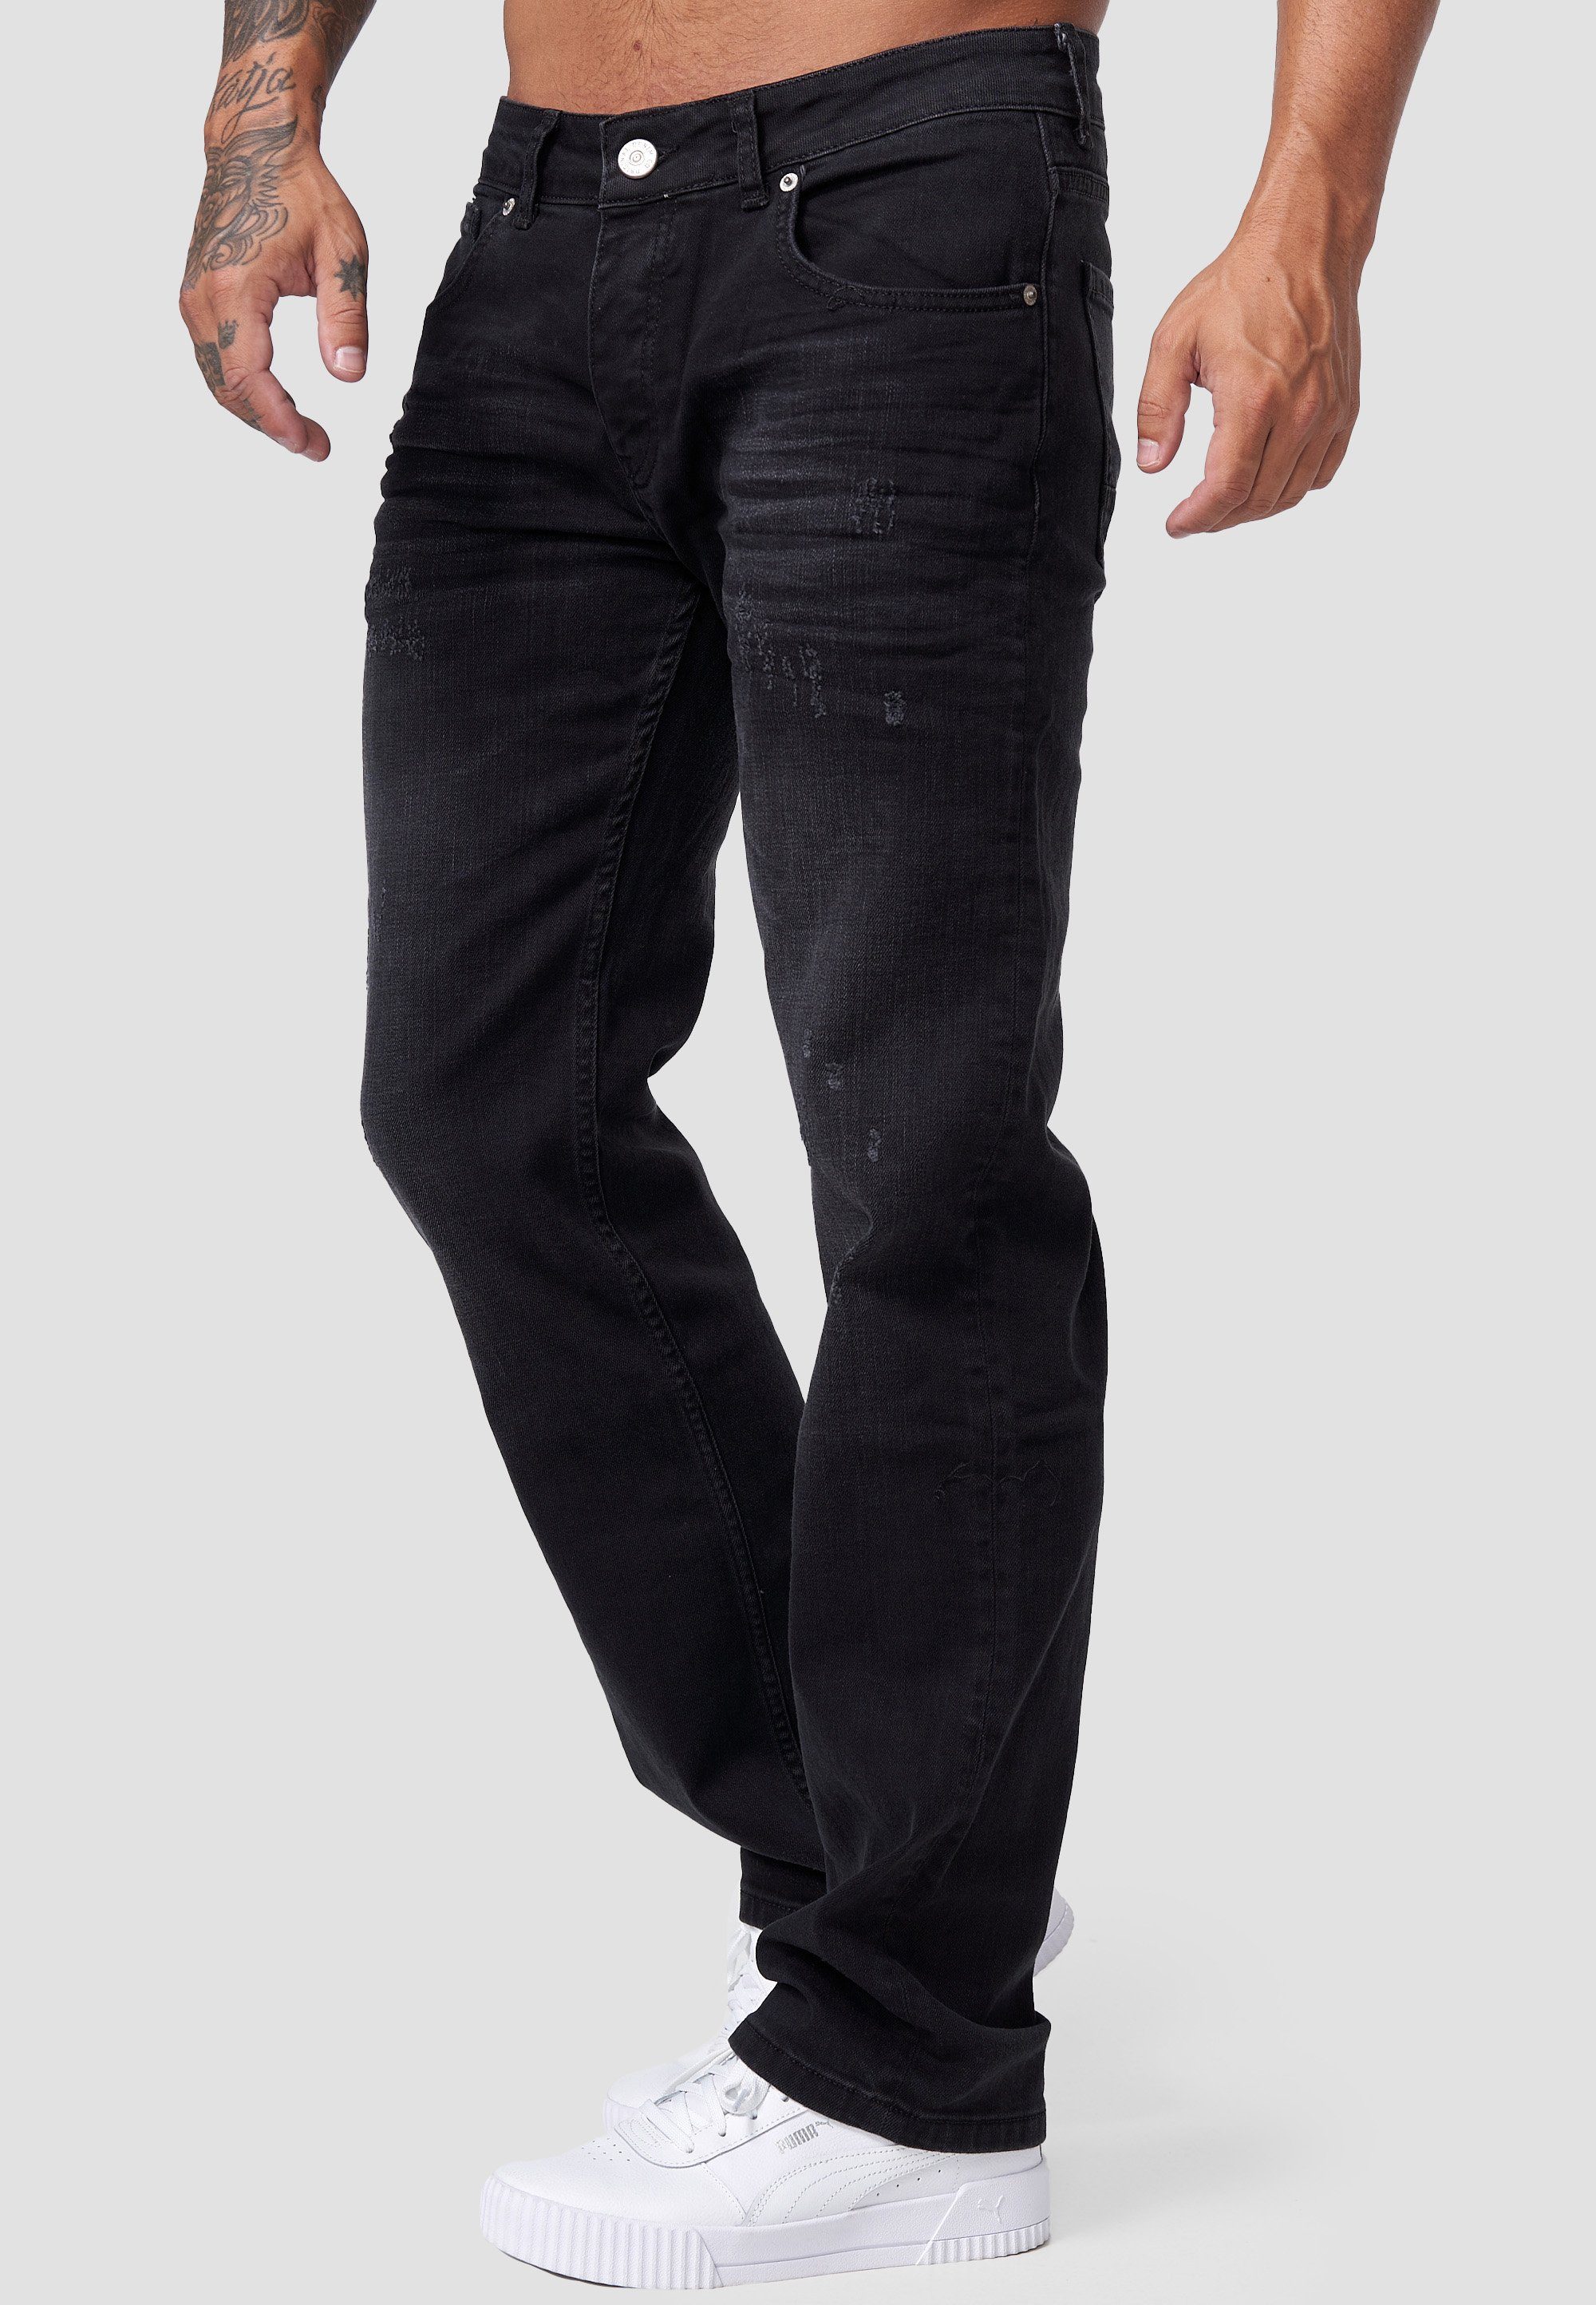 Jeans Code47 803 Herren 800X Regular-fit-Jeans